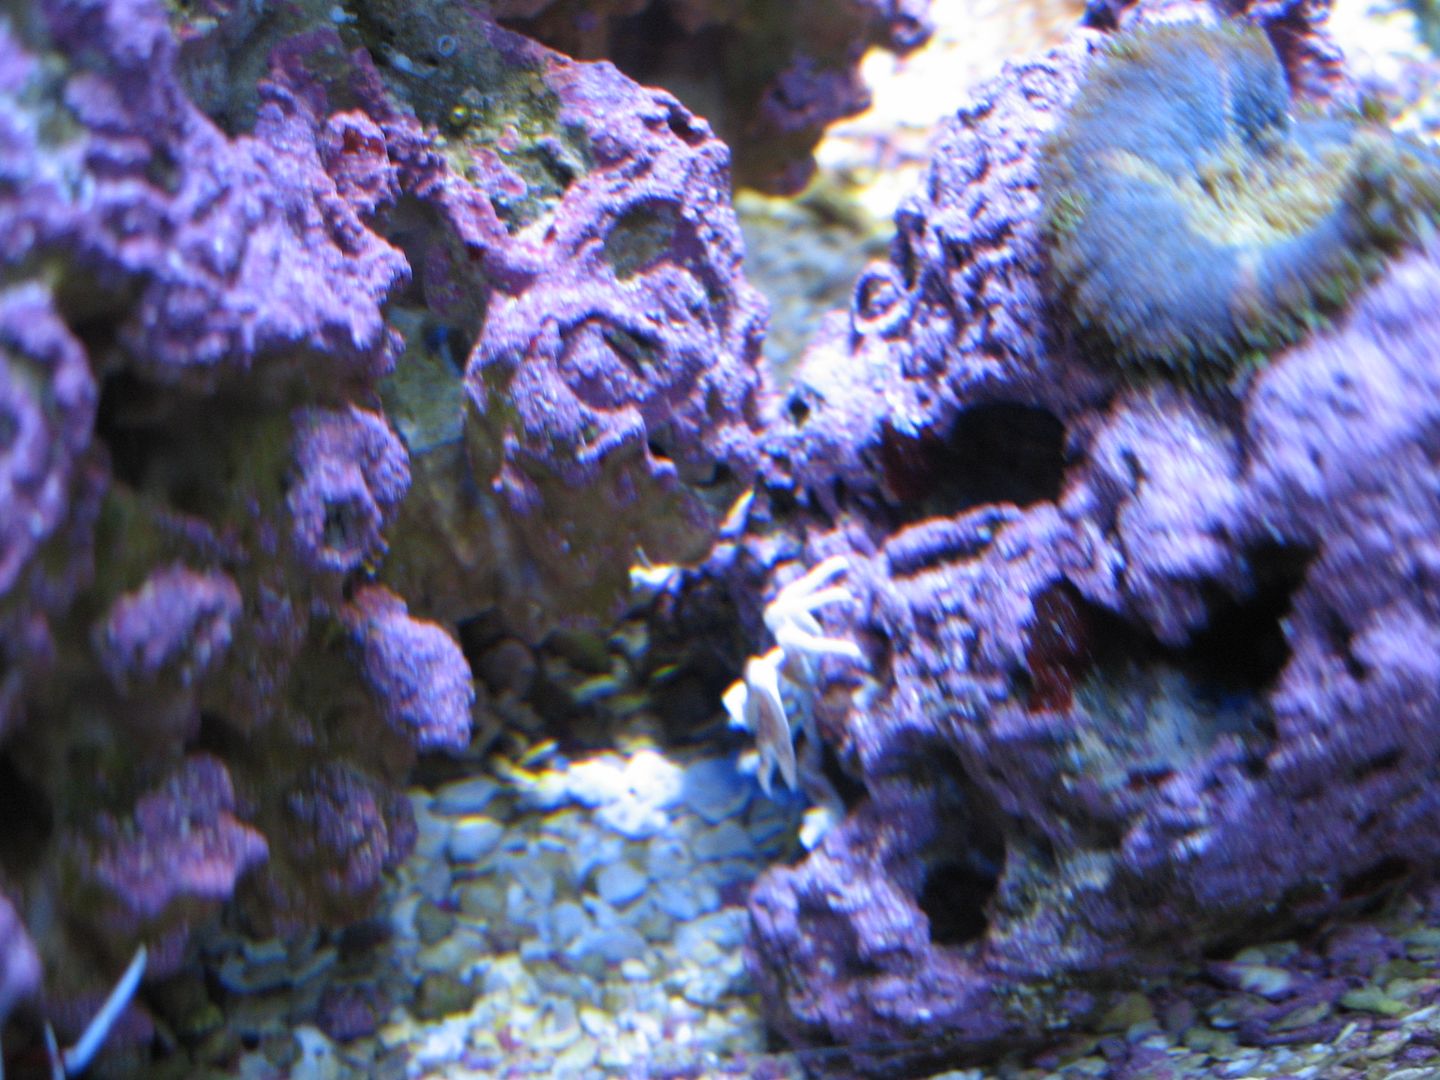 Aquarium_PorcelainAnemoneCrab2_03MAY2012.jpg